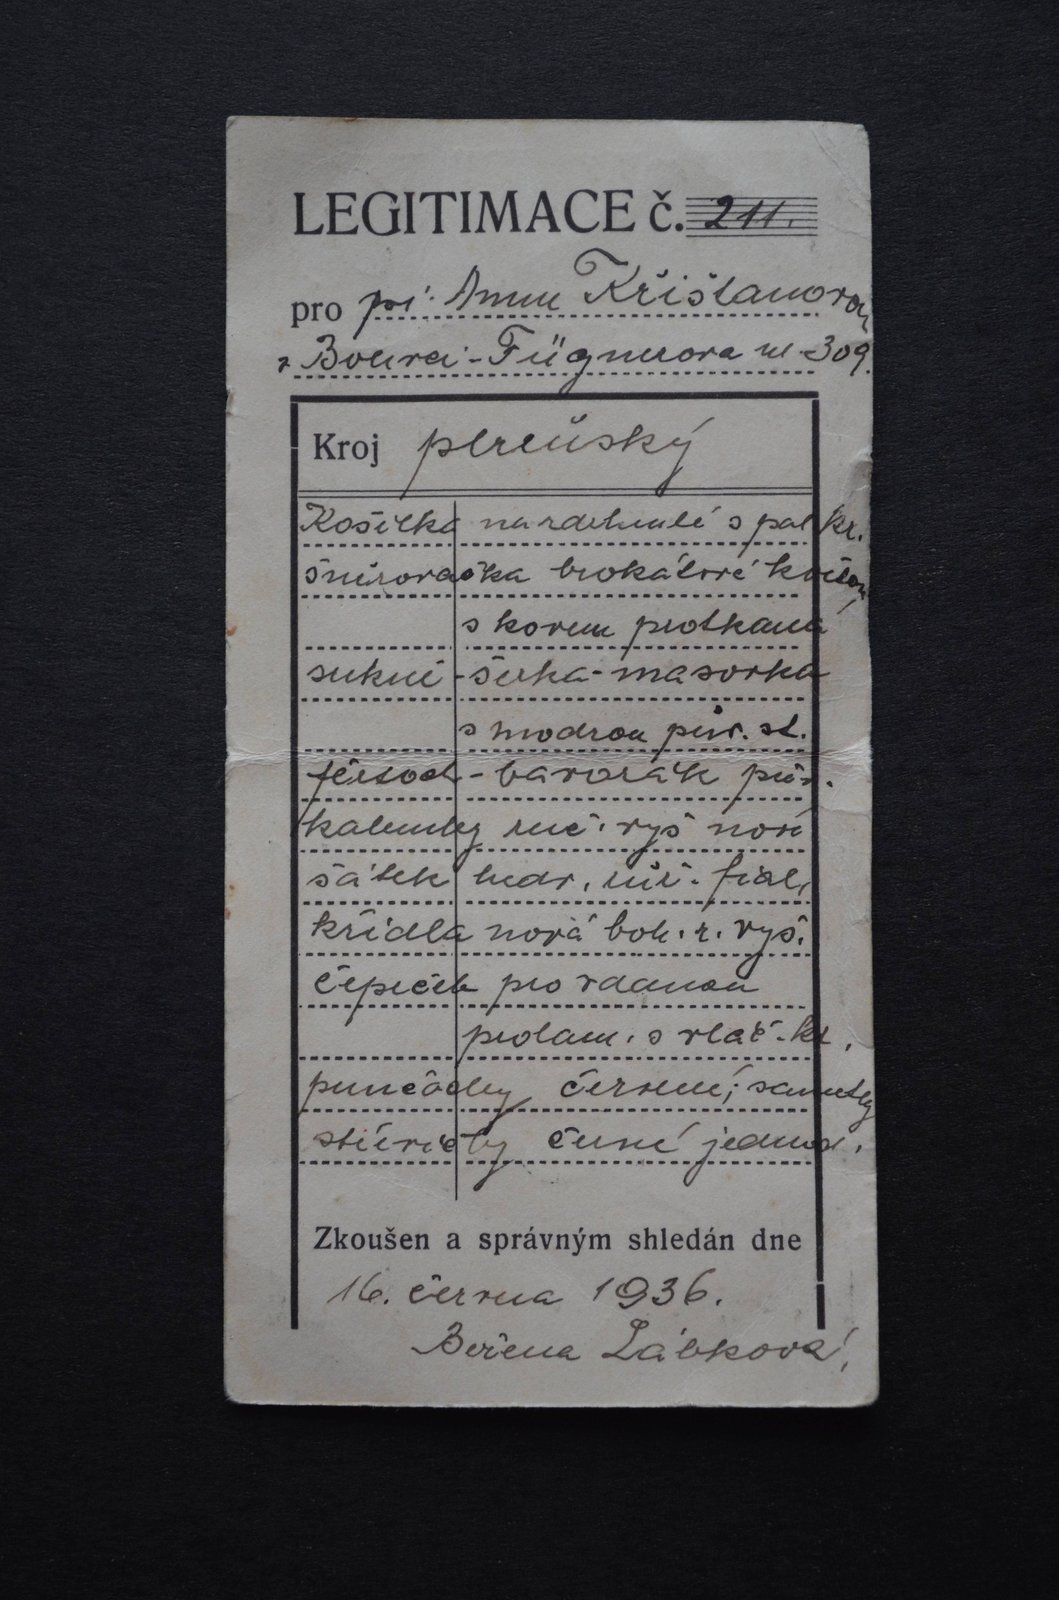 Legitimace lidového kroje Anny Křišťanové z roku 1936, která potvrzuje, že kroj má všechny náležitosti.